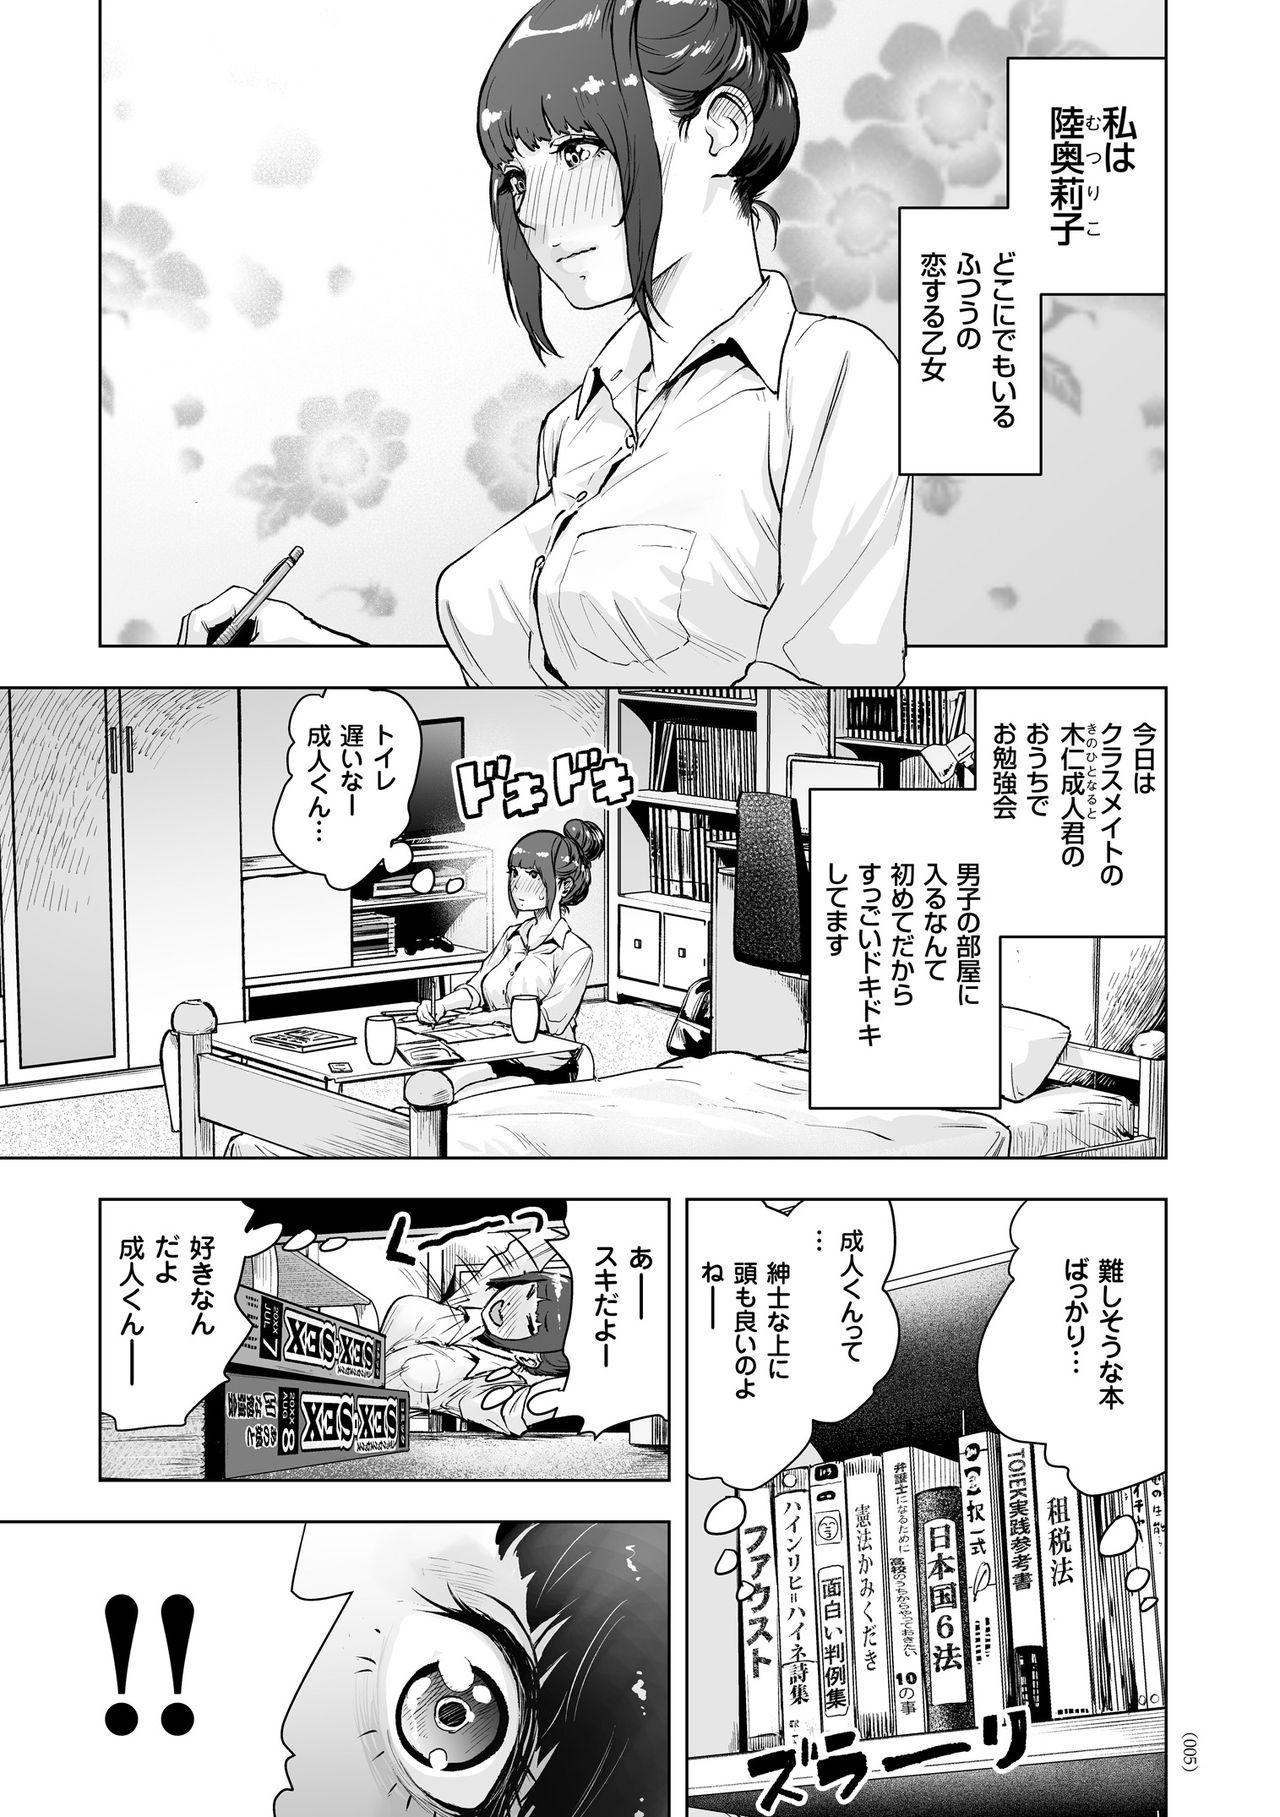 Mofos #Futsuu no Onnanoko Hot Milf - Page 4